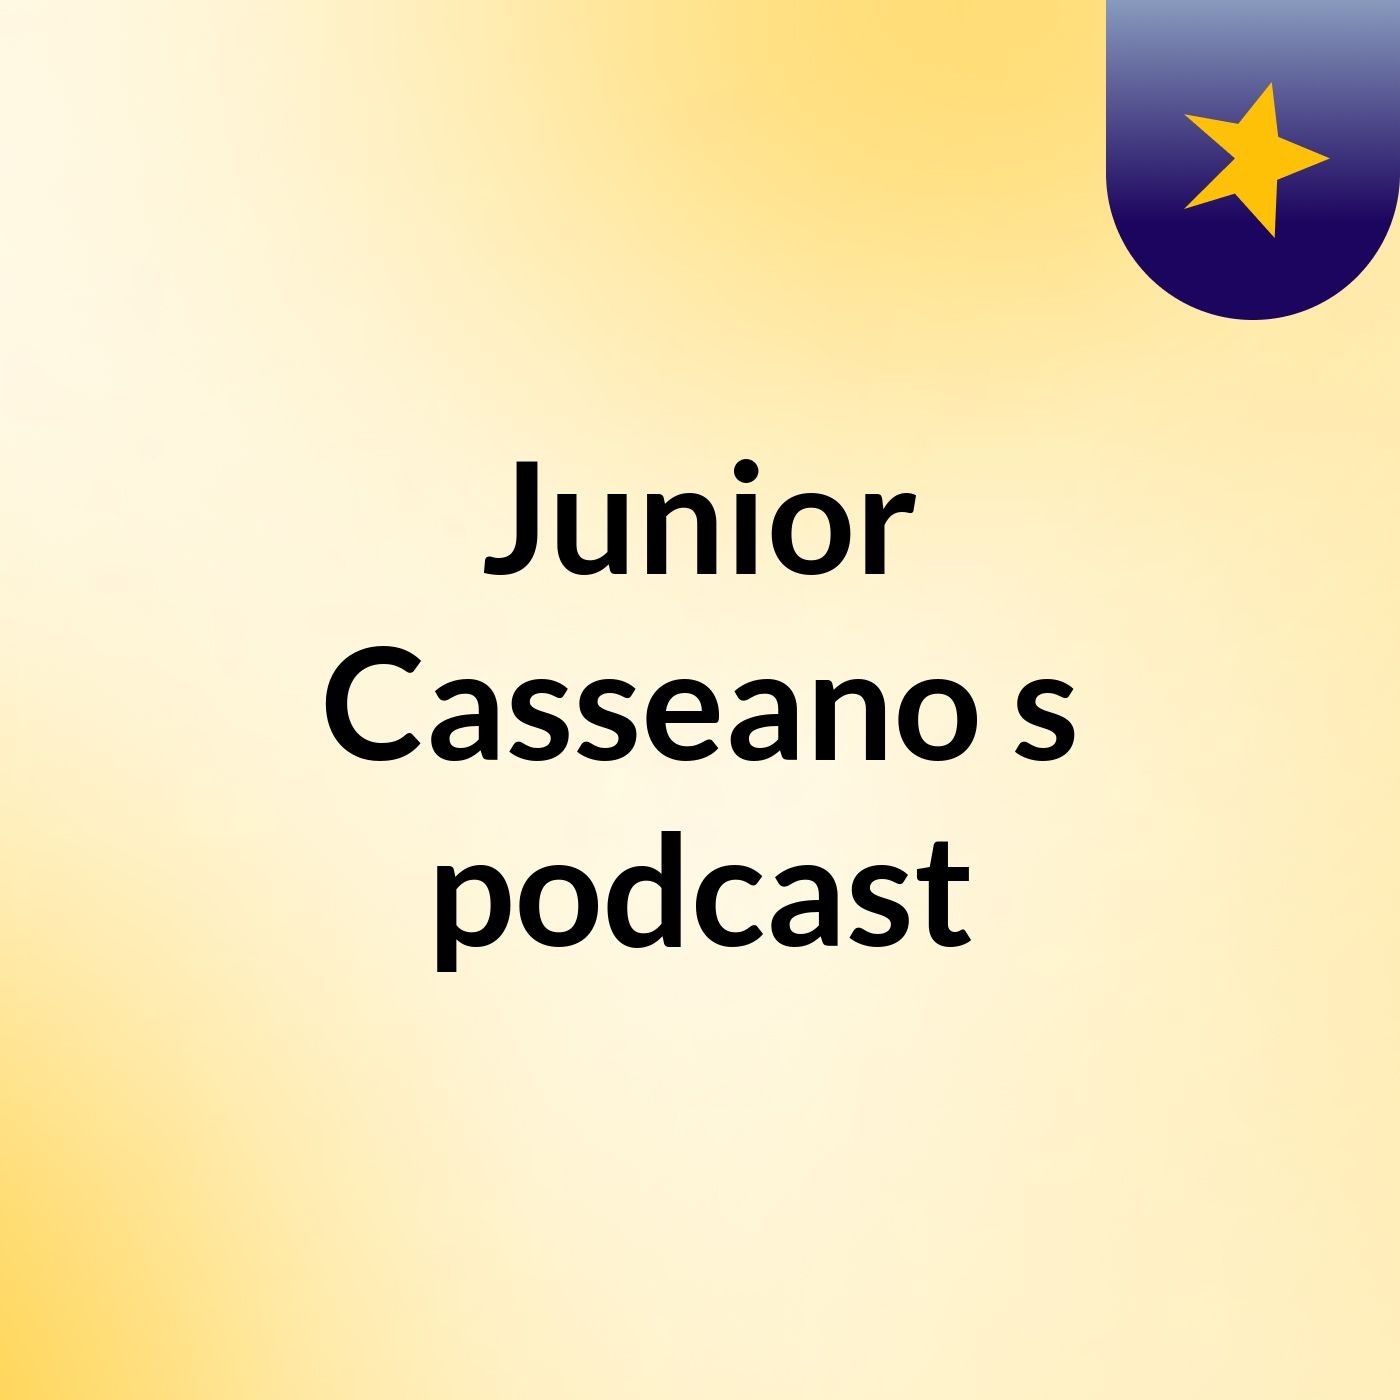 Junior Casseano's podcast